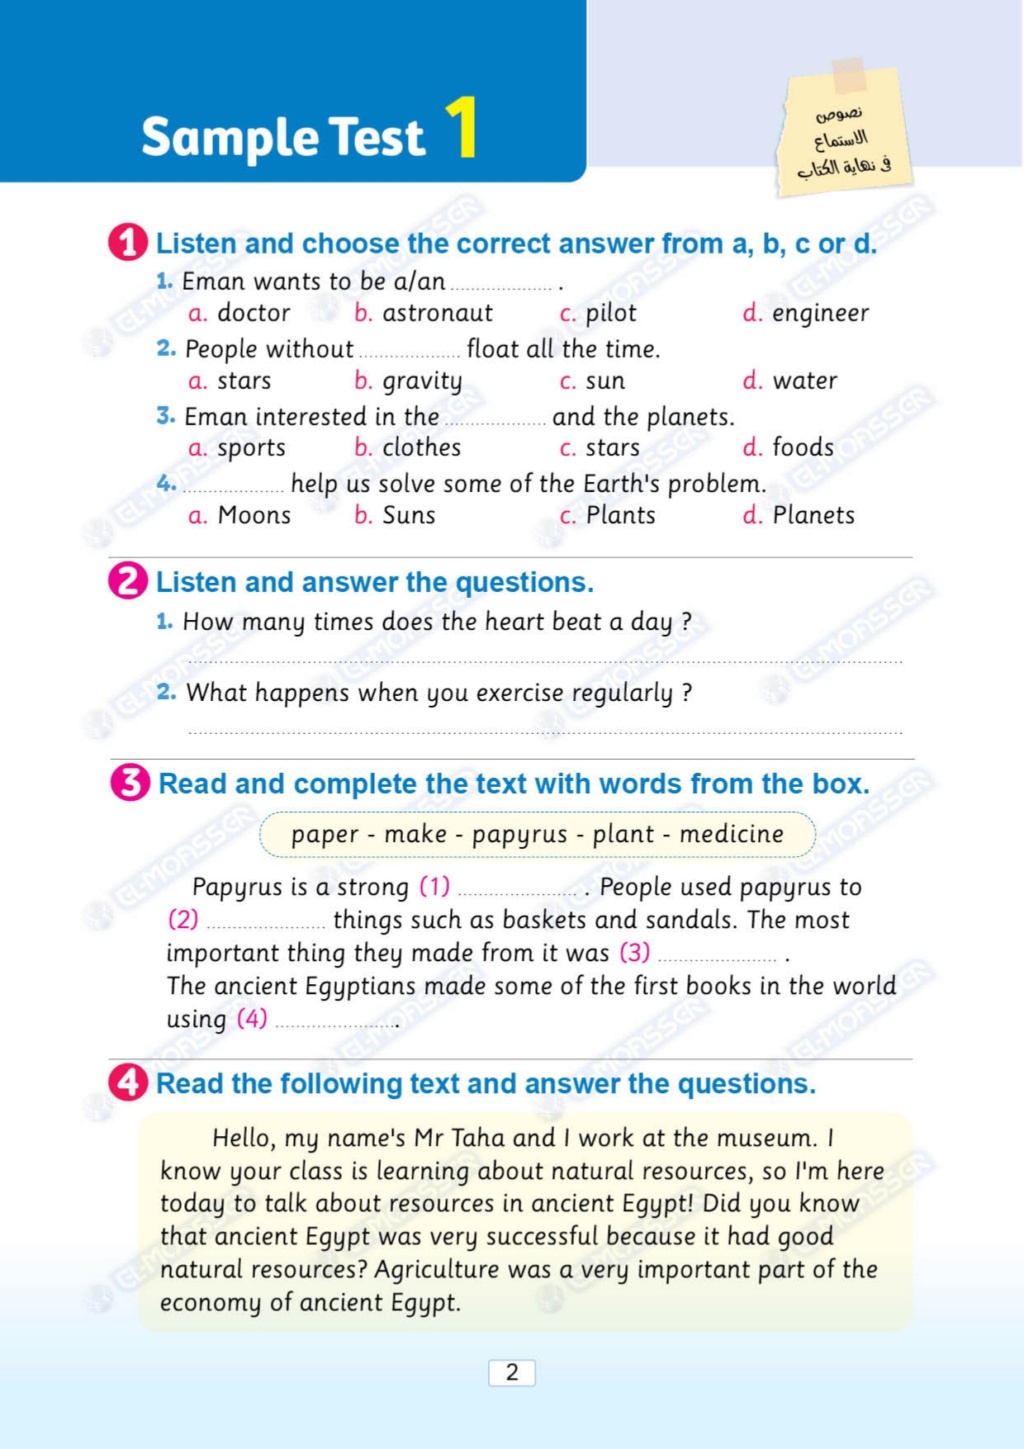 مراجعة مهمة لـ  Grade 5 منهج "Connect plus" شاملة كل أسئلة المنهج طبقًا لمواصفات الورقة الامتحانية 13115